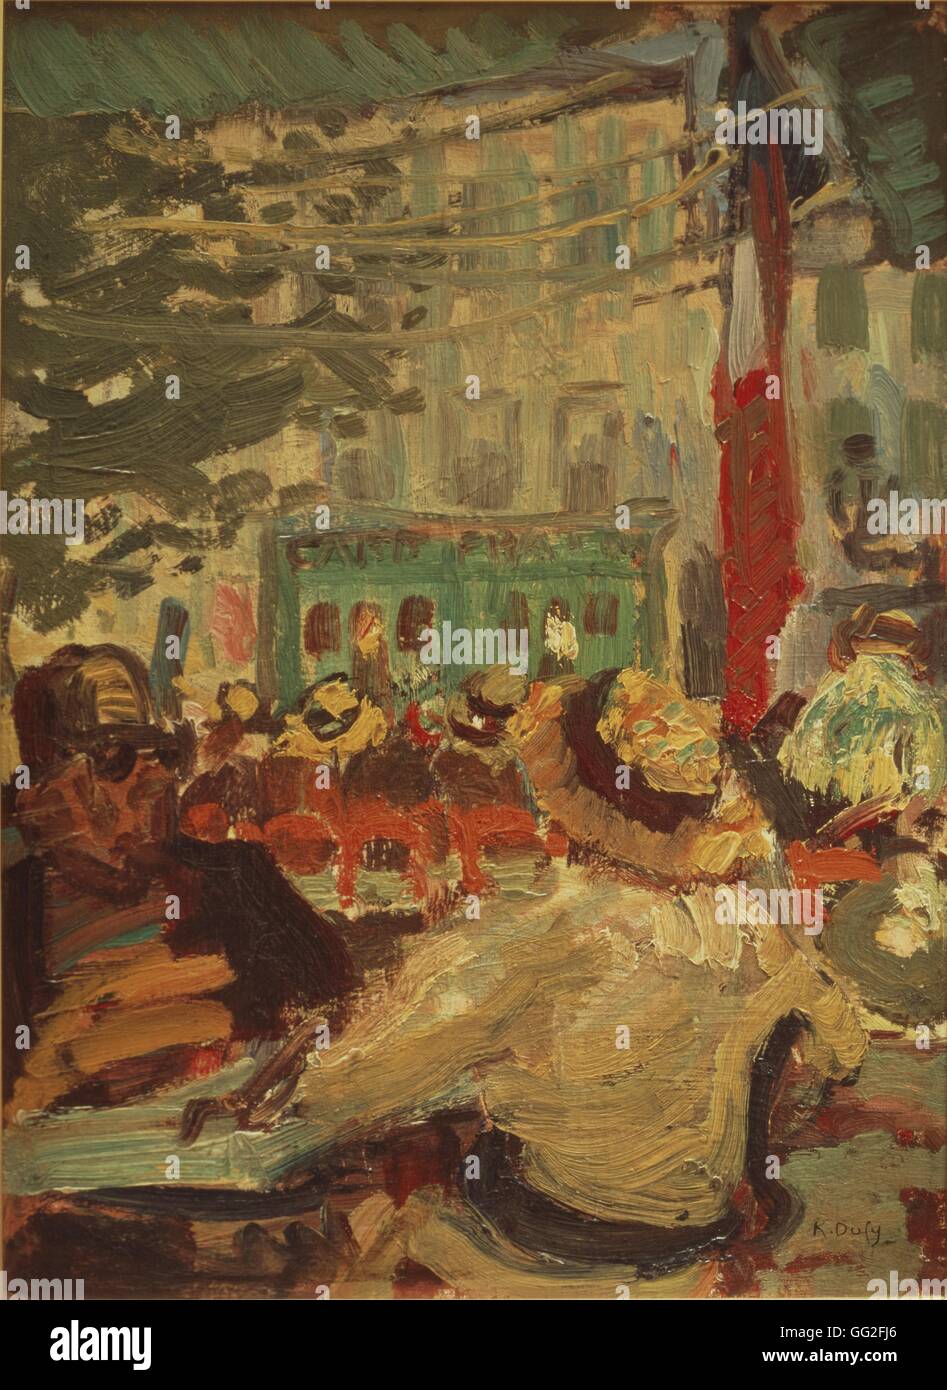 Raoul Dufy (1877 - 1953) peintre fauviste français. Terrasse de café à  Martigues (près de Marseille) 1904 Huile sur carton (33 x 24 cm), musée  Ziem de Martigues (France Photo Stock - Alamy